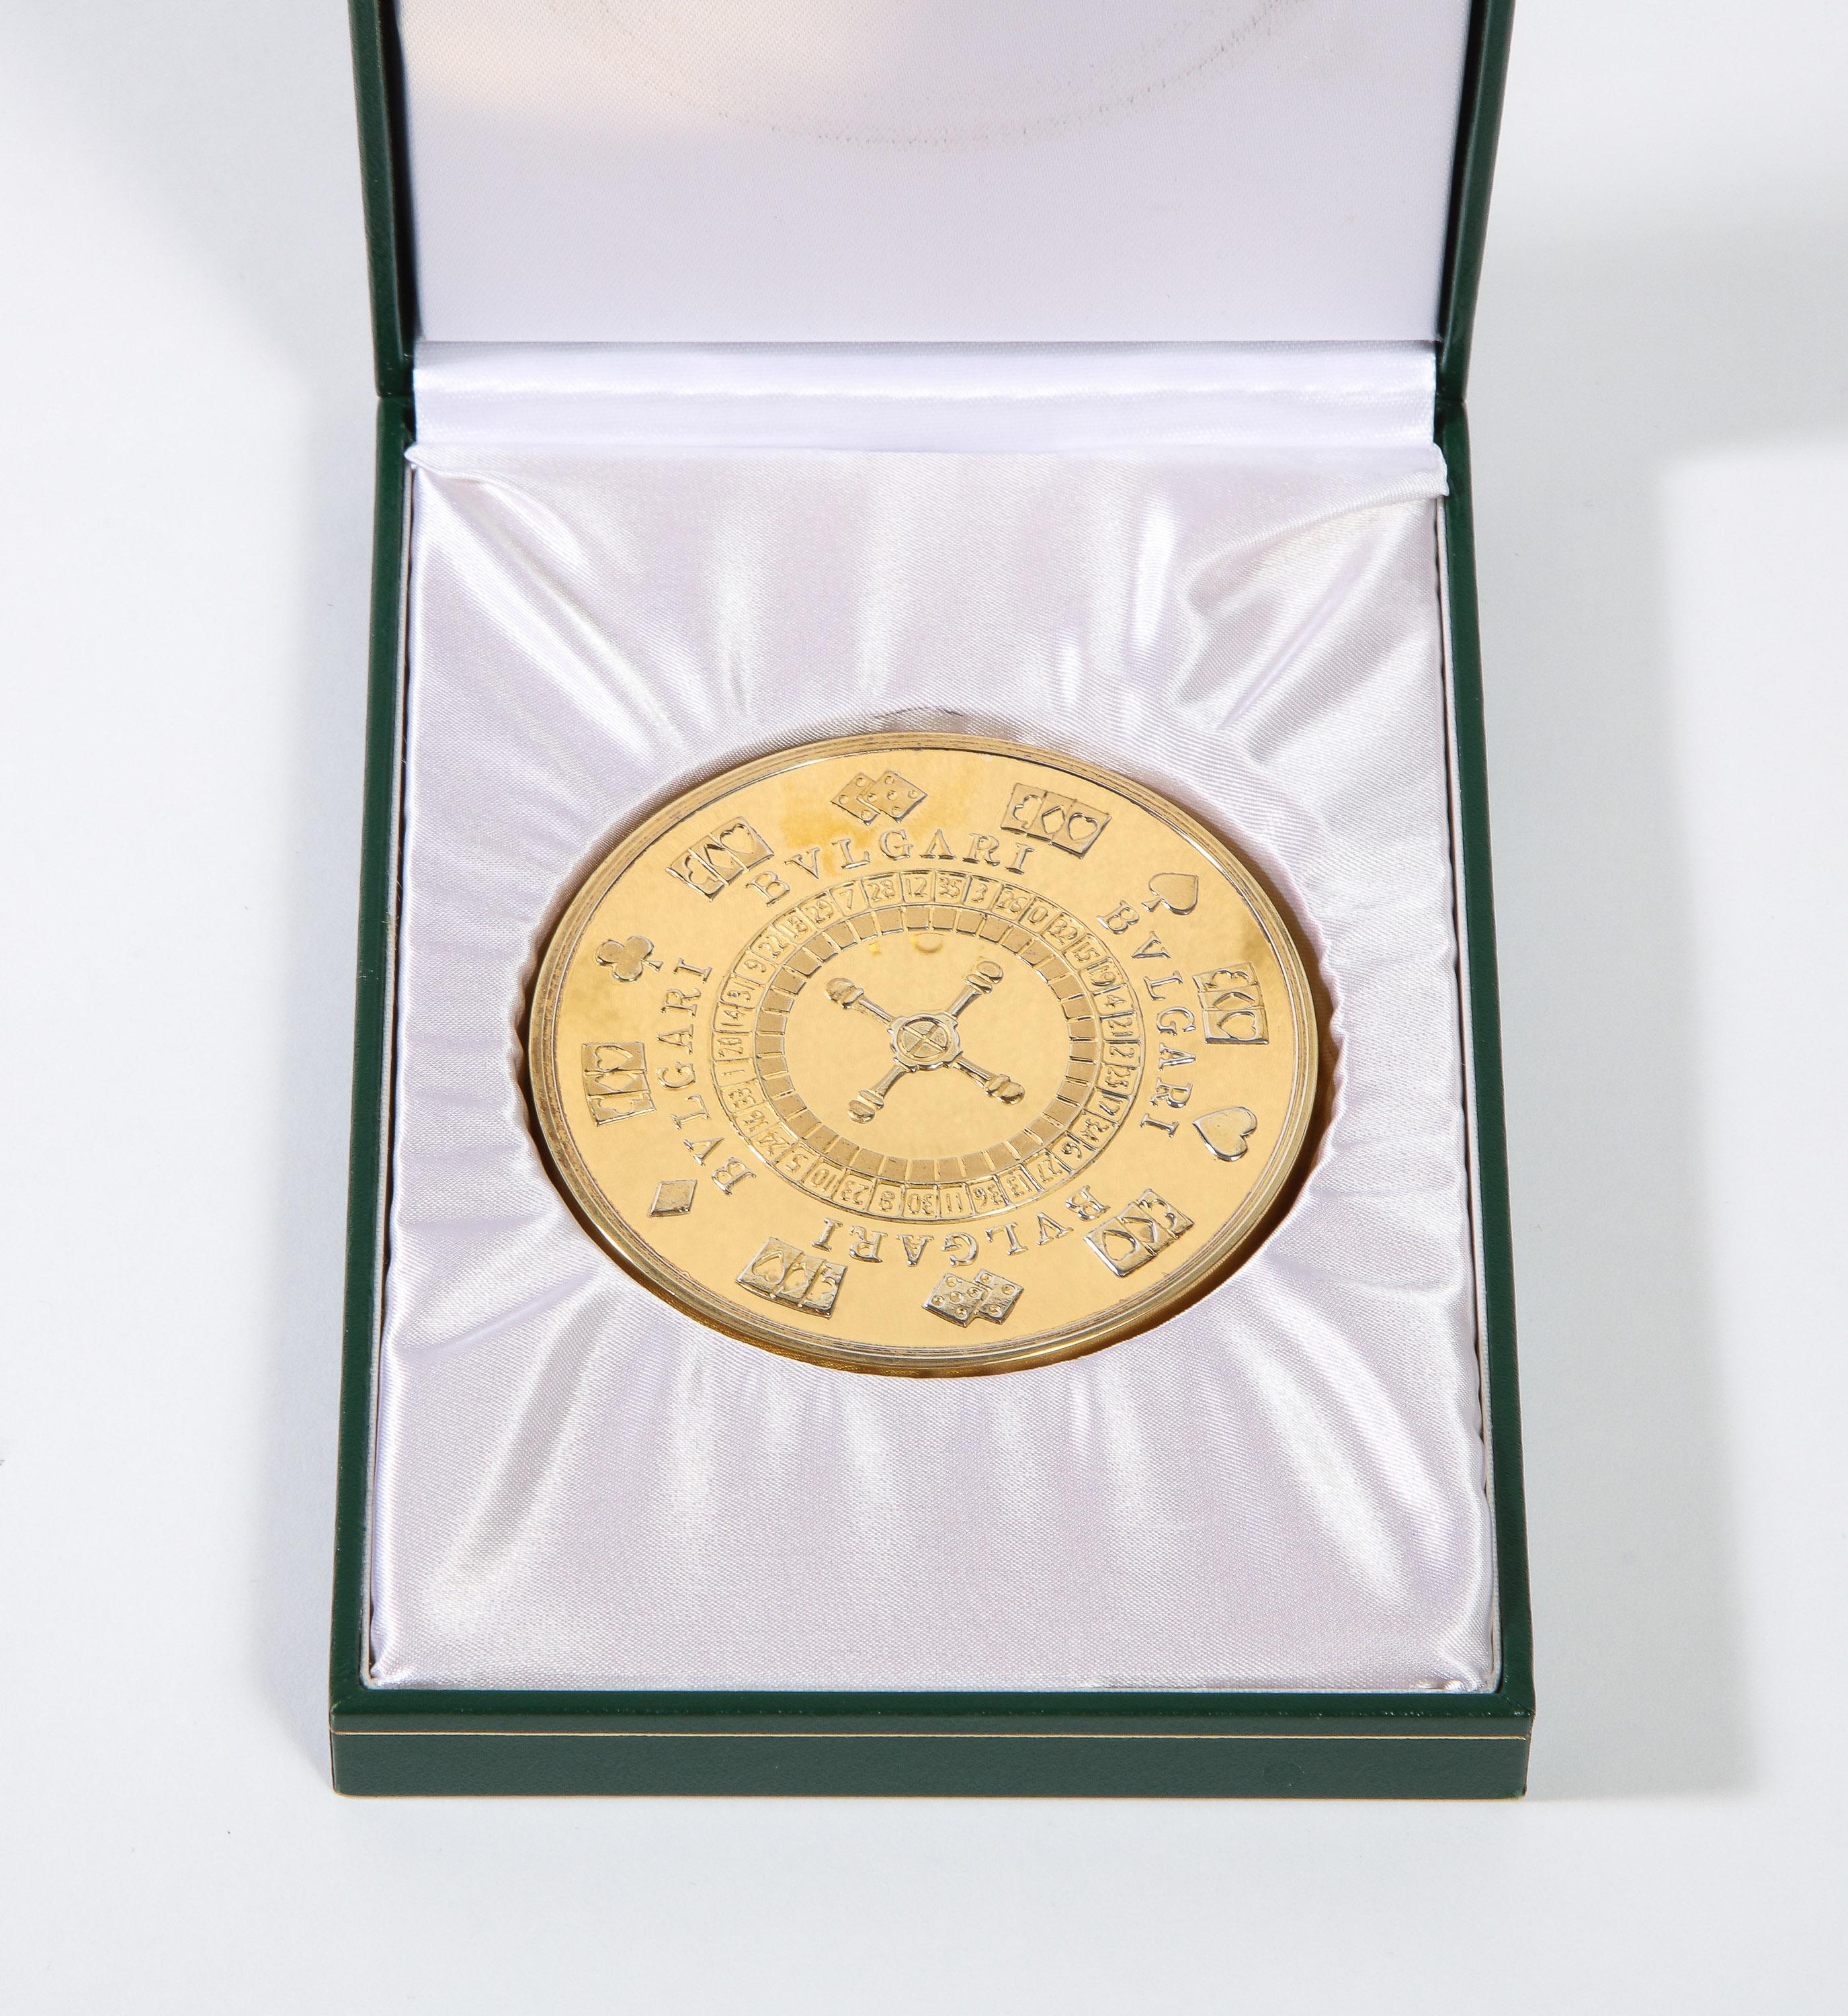 Bvlgari Bulgari Sterling Silver-Gilt Oversized Casino Paperweight Coin 